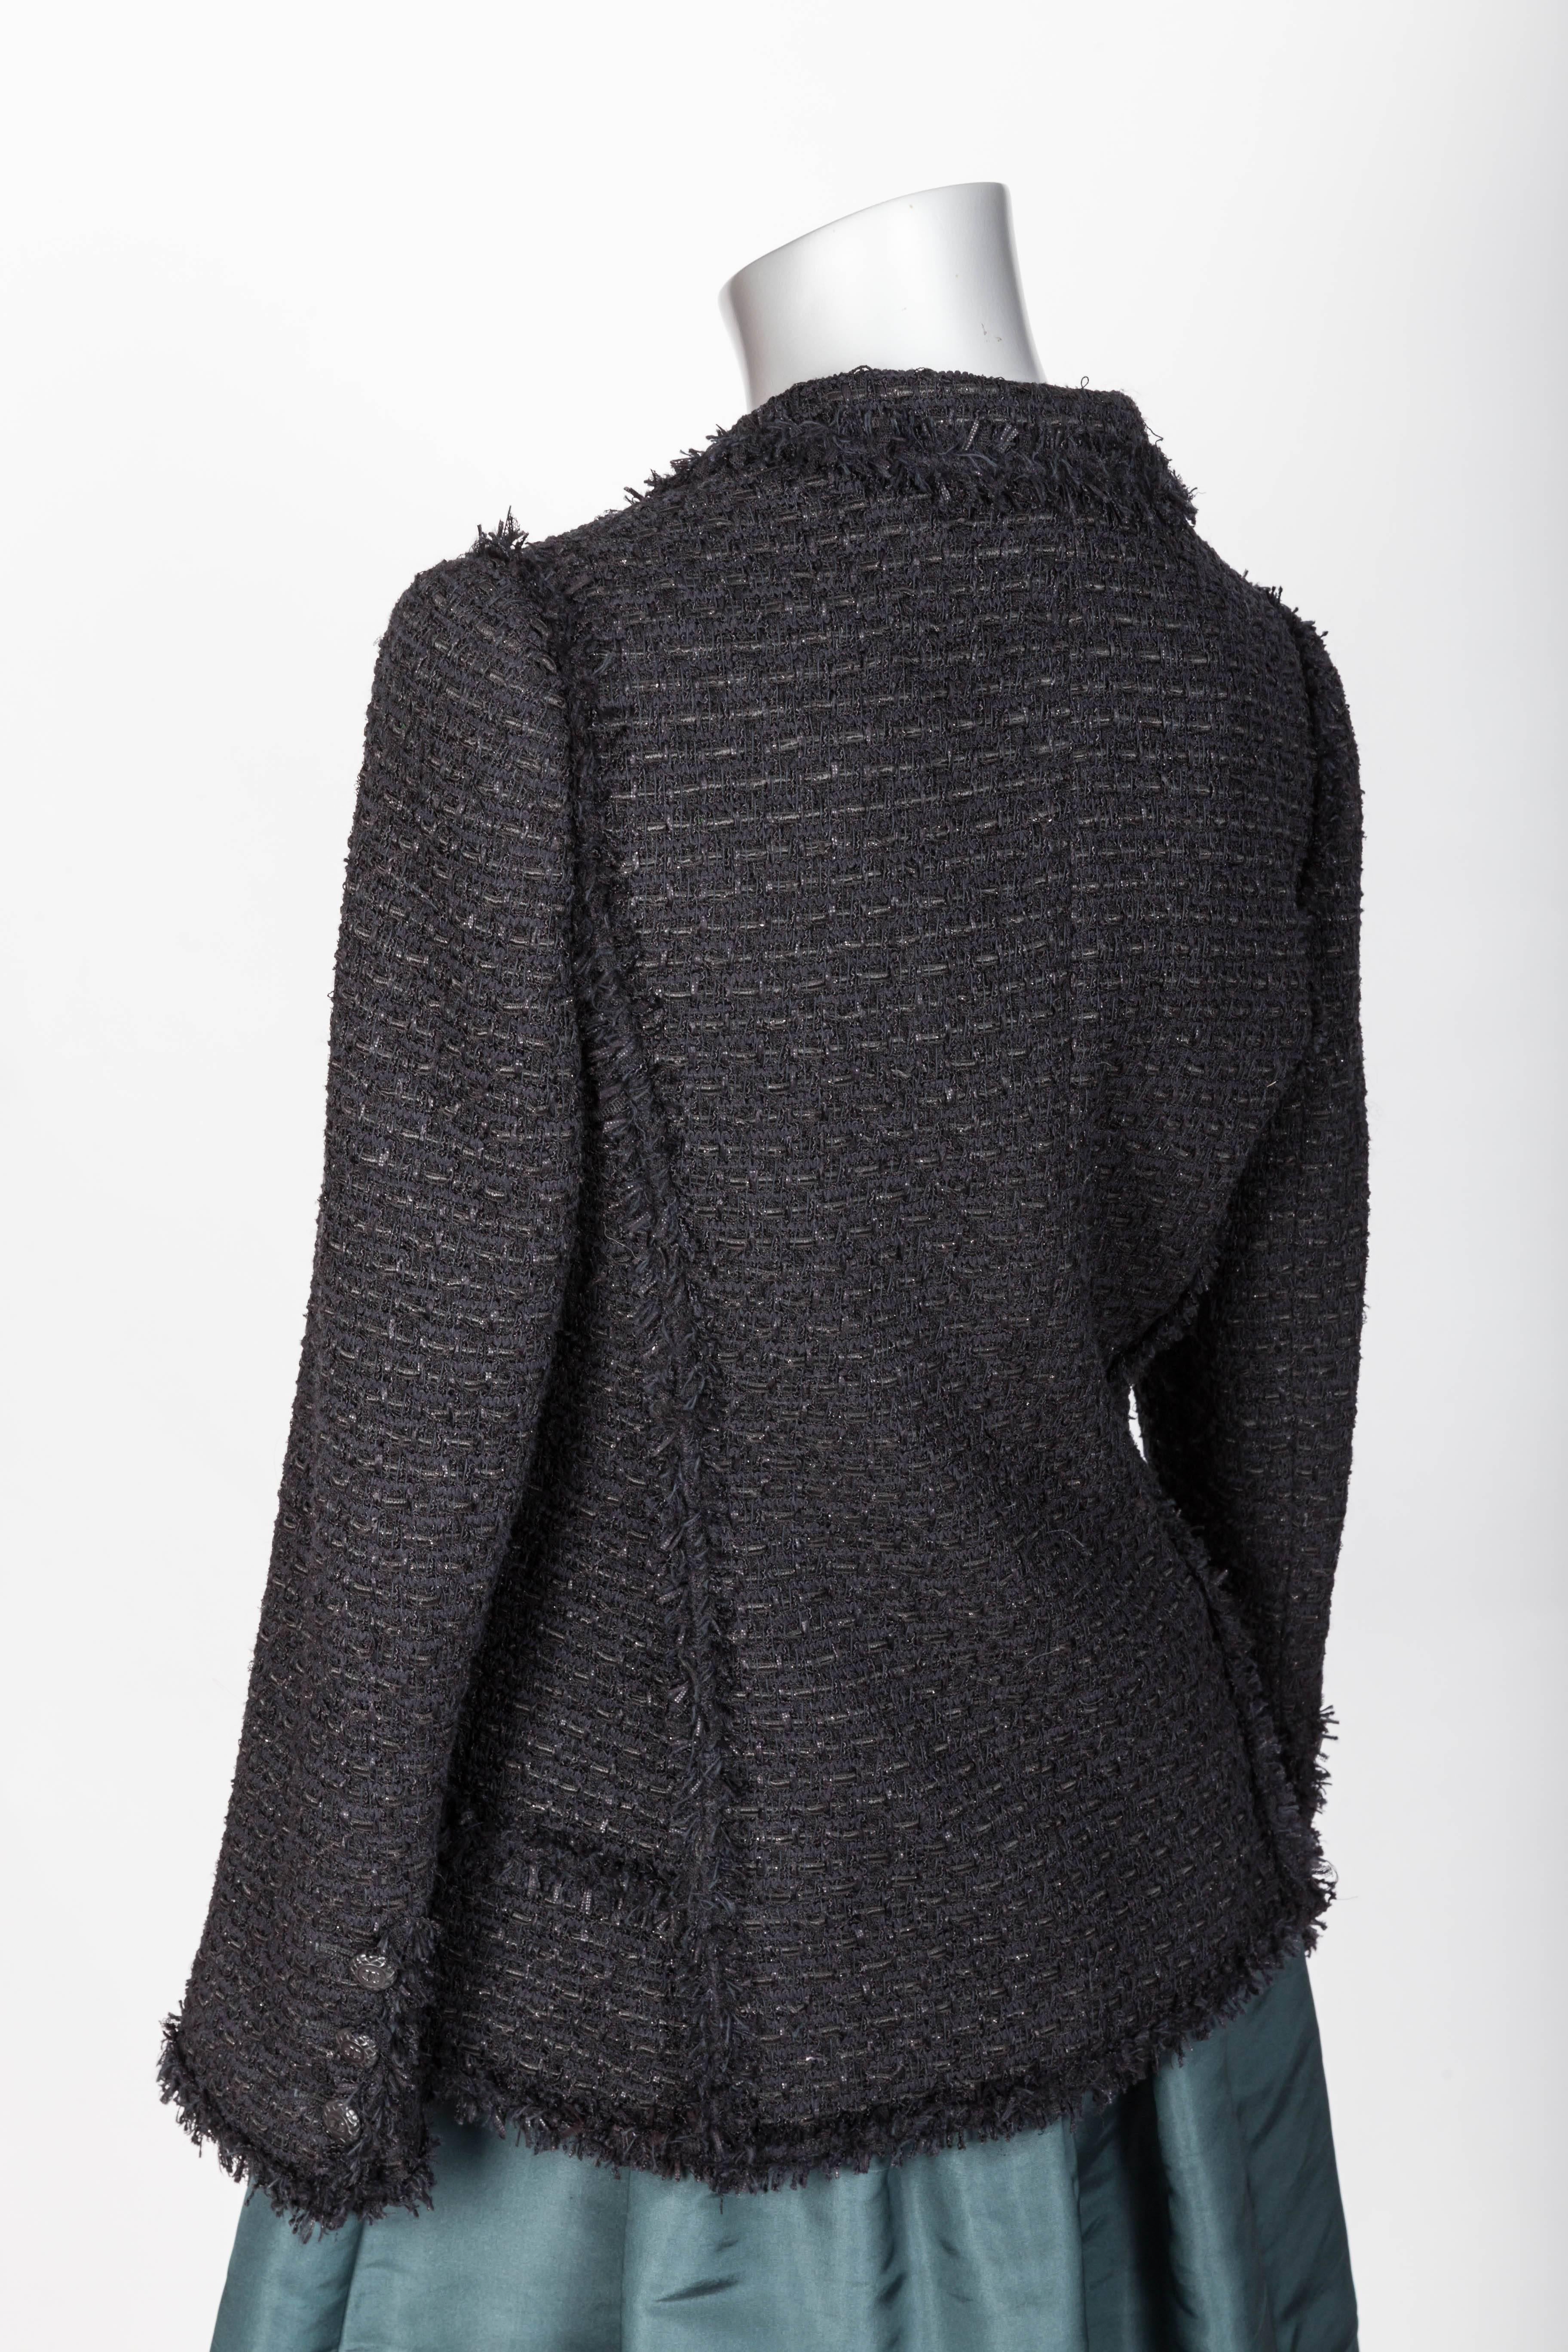 Chanel Black Jacket with Fringe Trim - FR 38 / US 6 1